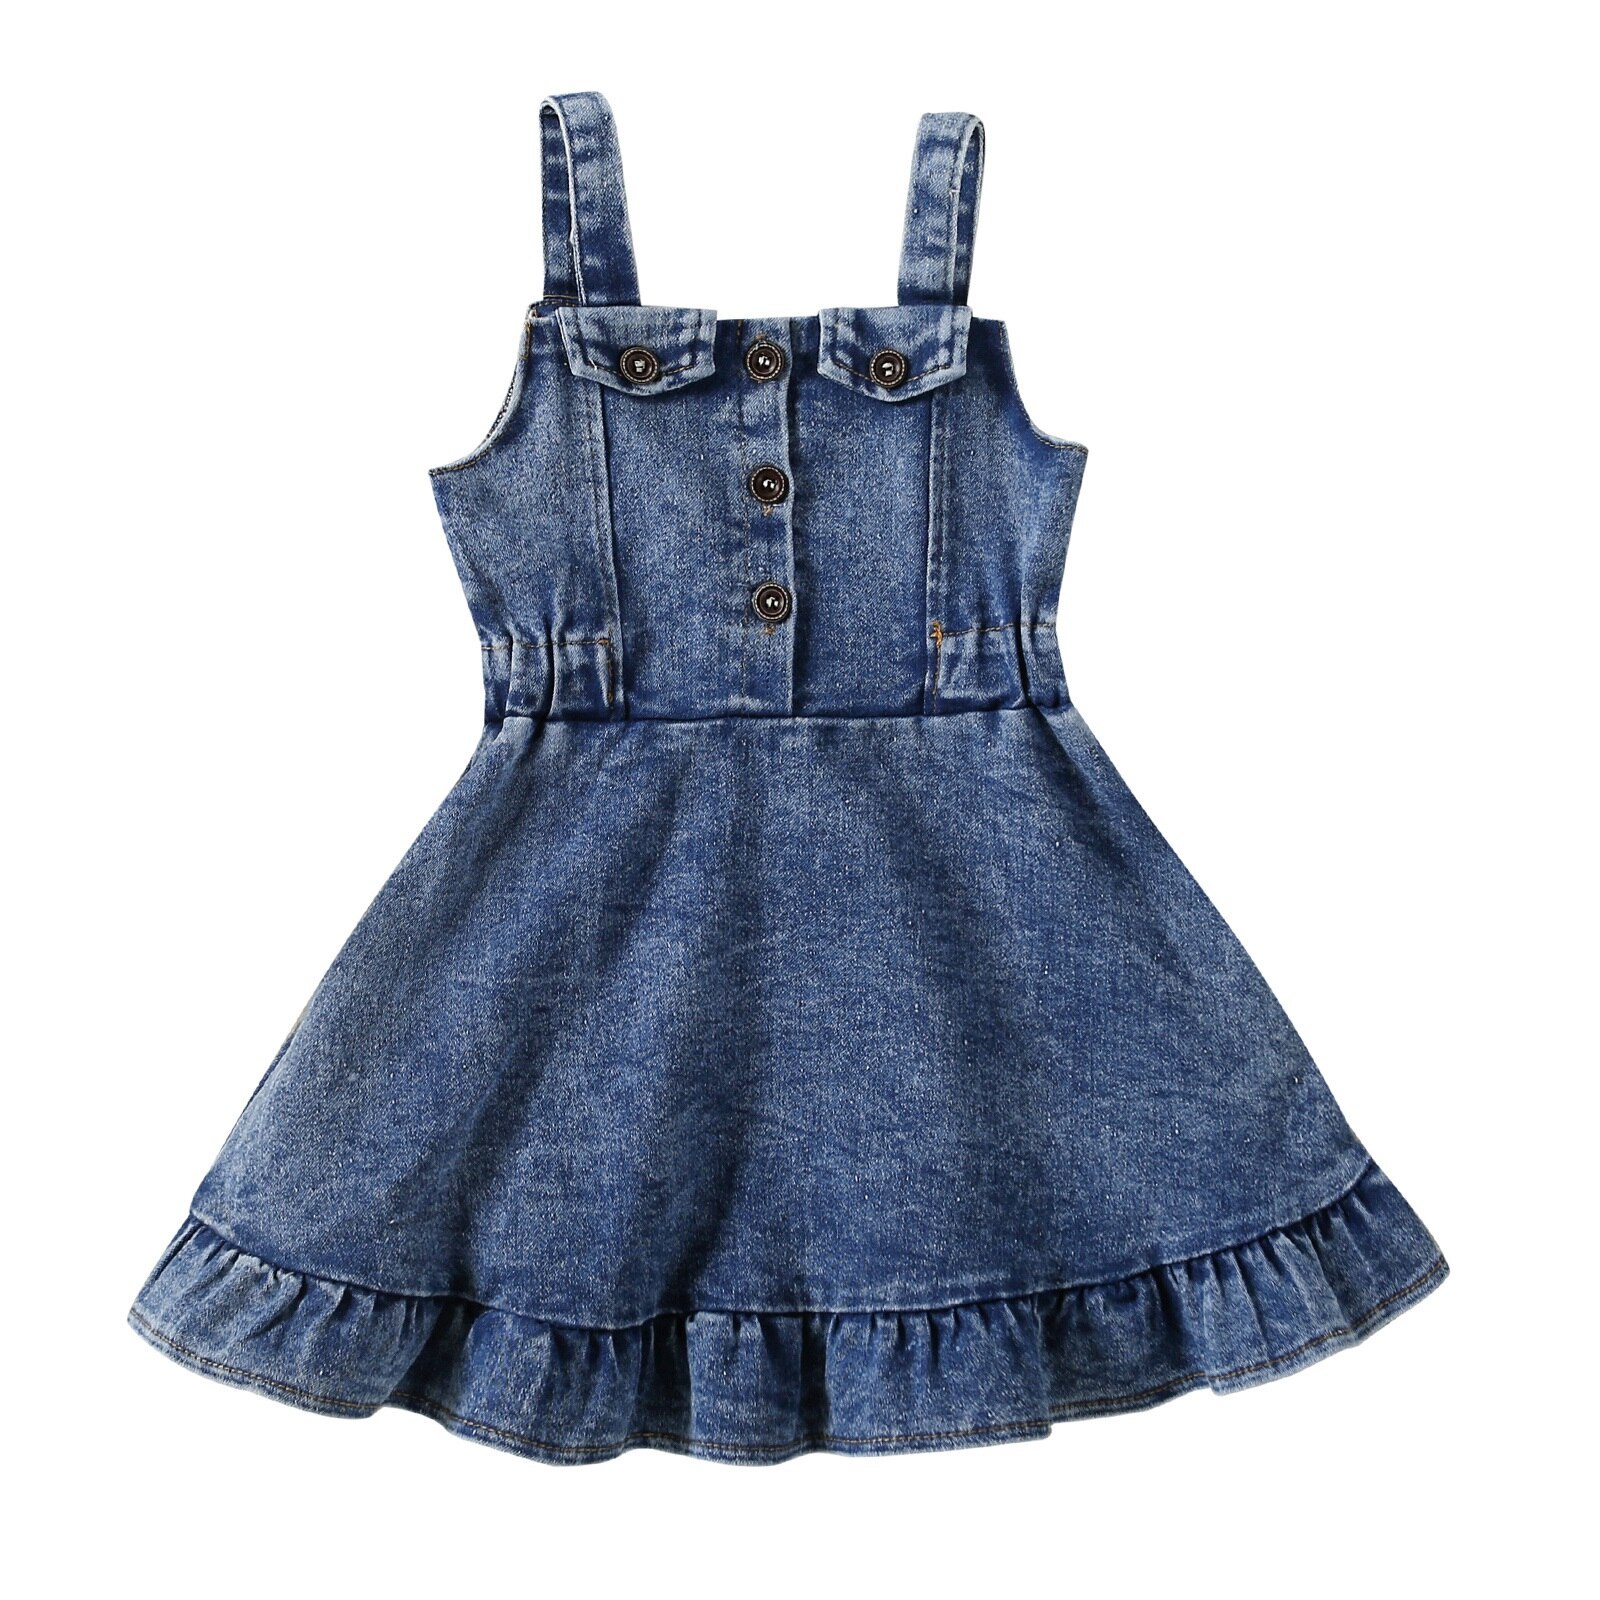 Citgeett-Summer-Kids-Toddler-Girls-Denim-Dress-Sleeveless-Ruffle-Dress-Casual-Clothes-Suit-5